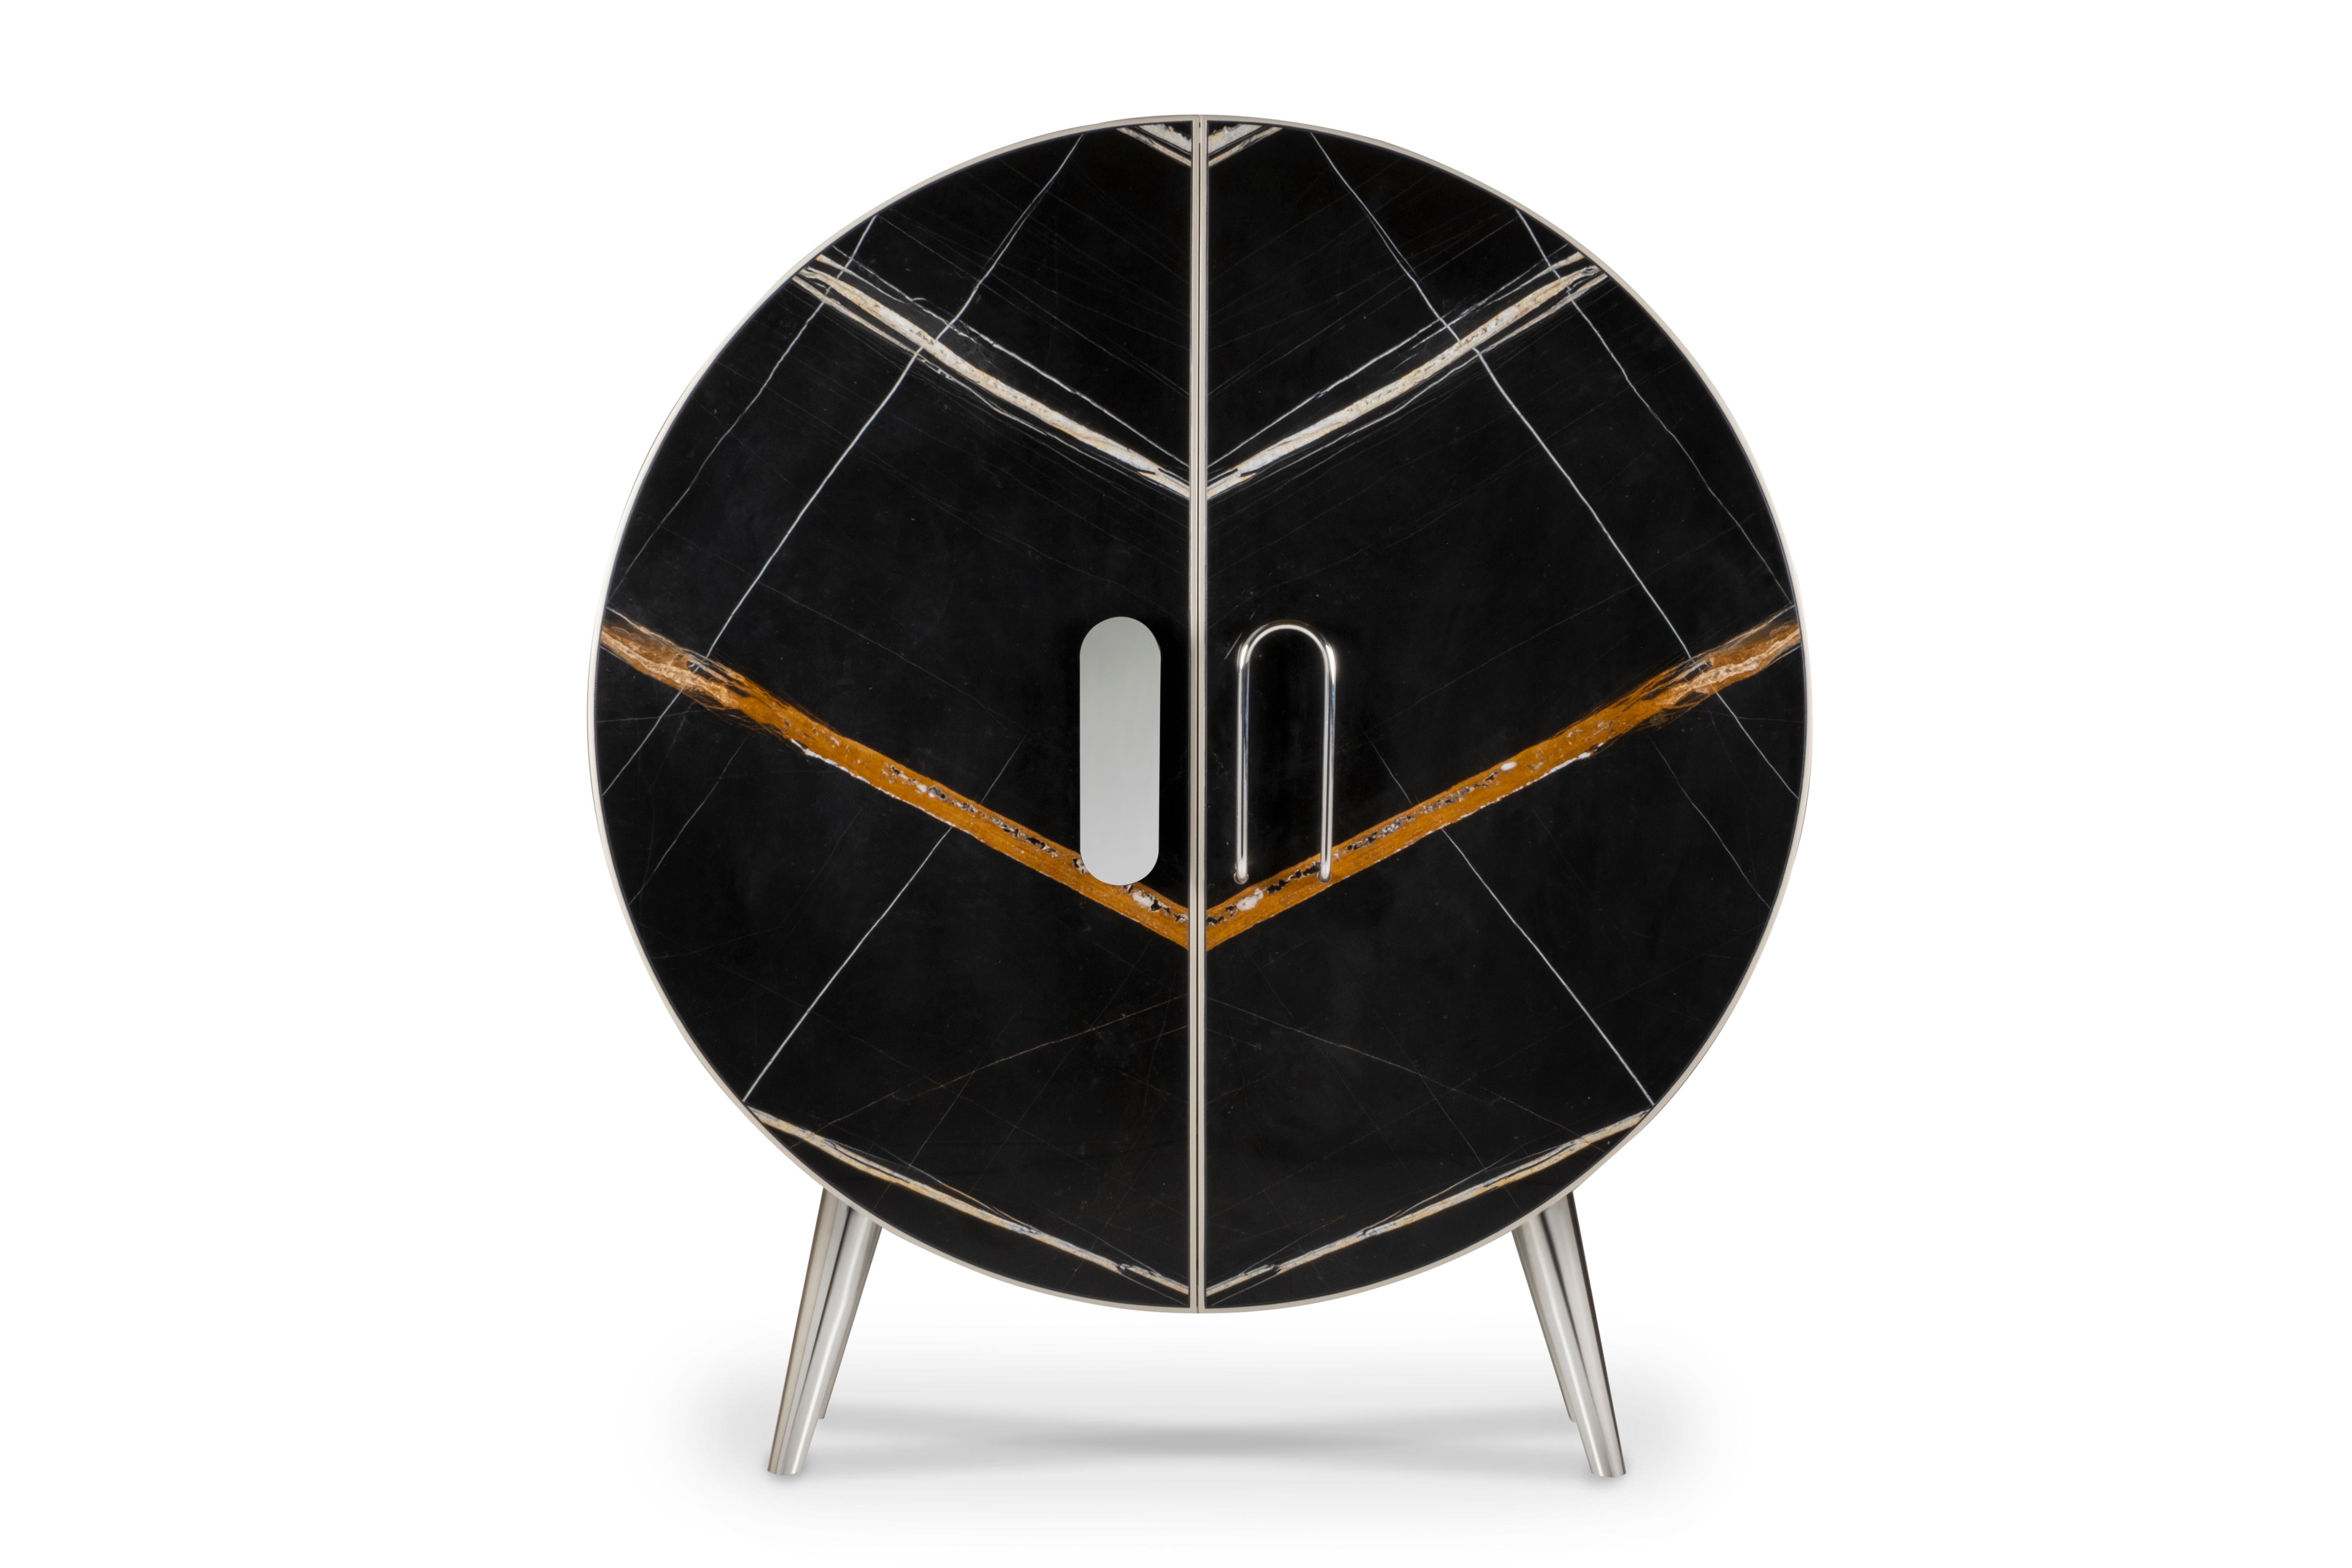 Bongó Closet, Contemporary Collection, handgefertigt in Portugal - Europa von Greenapple.

Der von Rute Martins für die Collection'S Contemporary entworfene Schrank Bongó aus Marmor Sahara Noir ist ein Statement von unvergleichlichem Luxus. Wie das